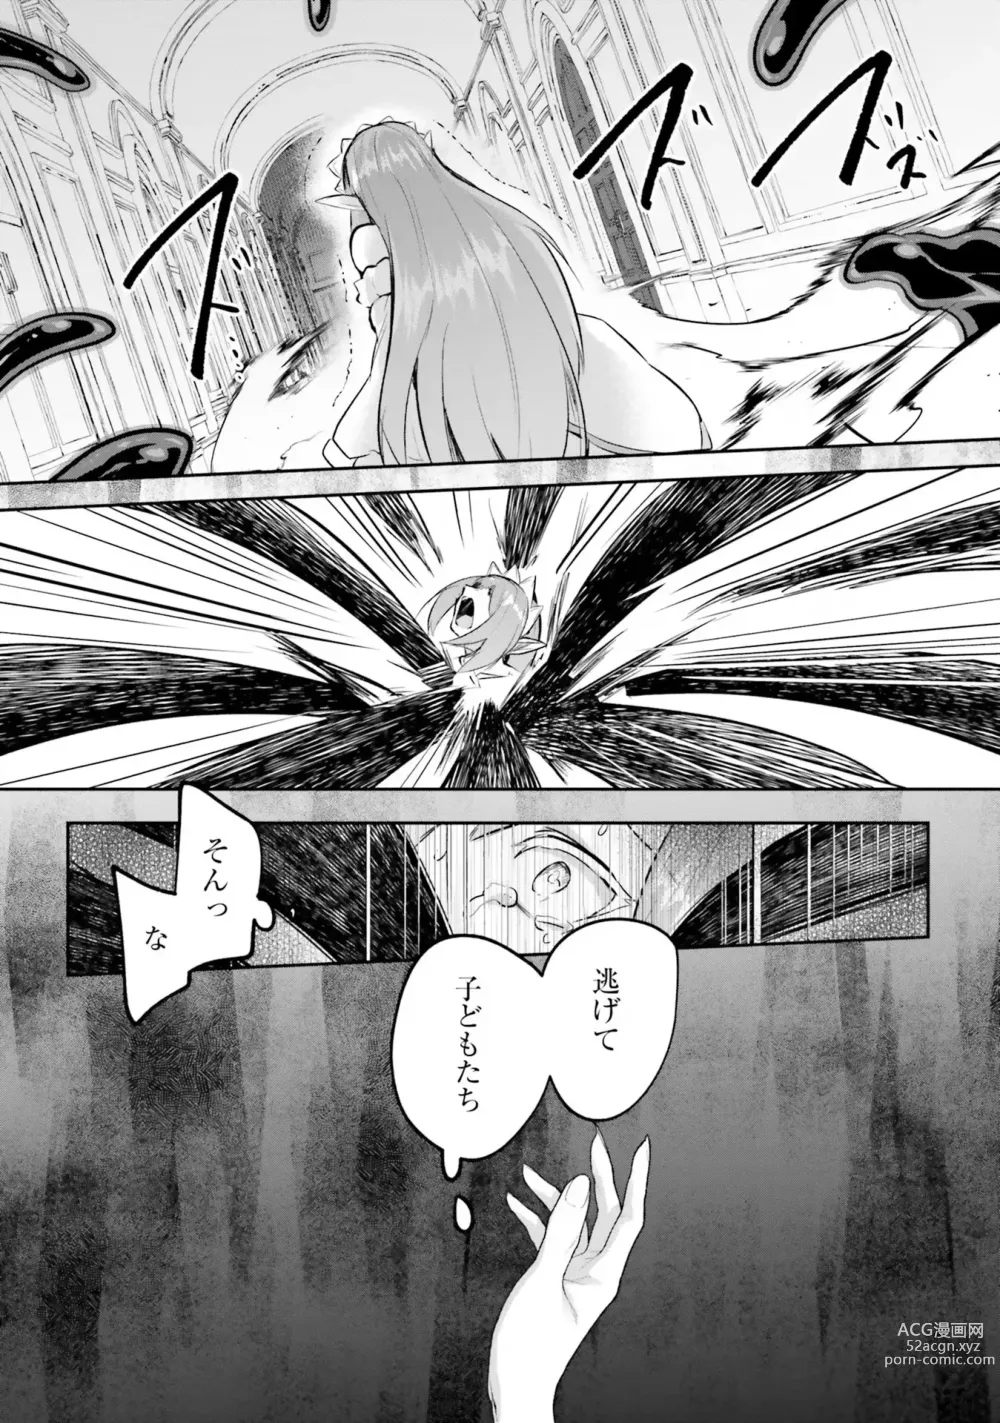 Page 158 of manga Inbi na Doukutsu no Sono Oku de 4